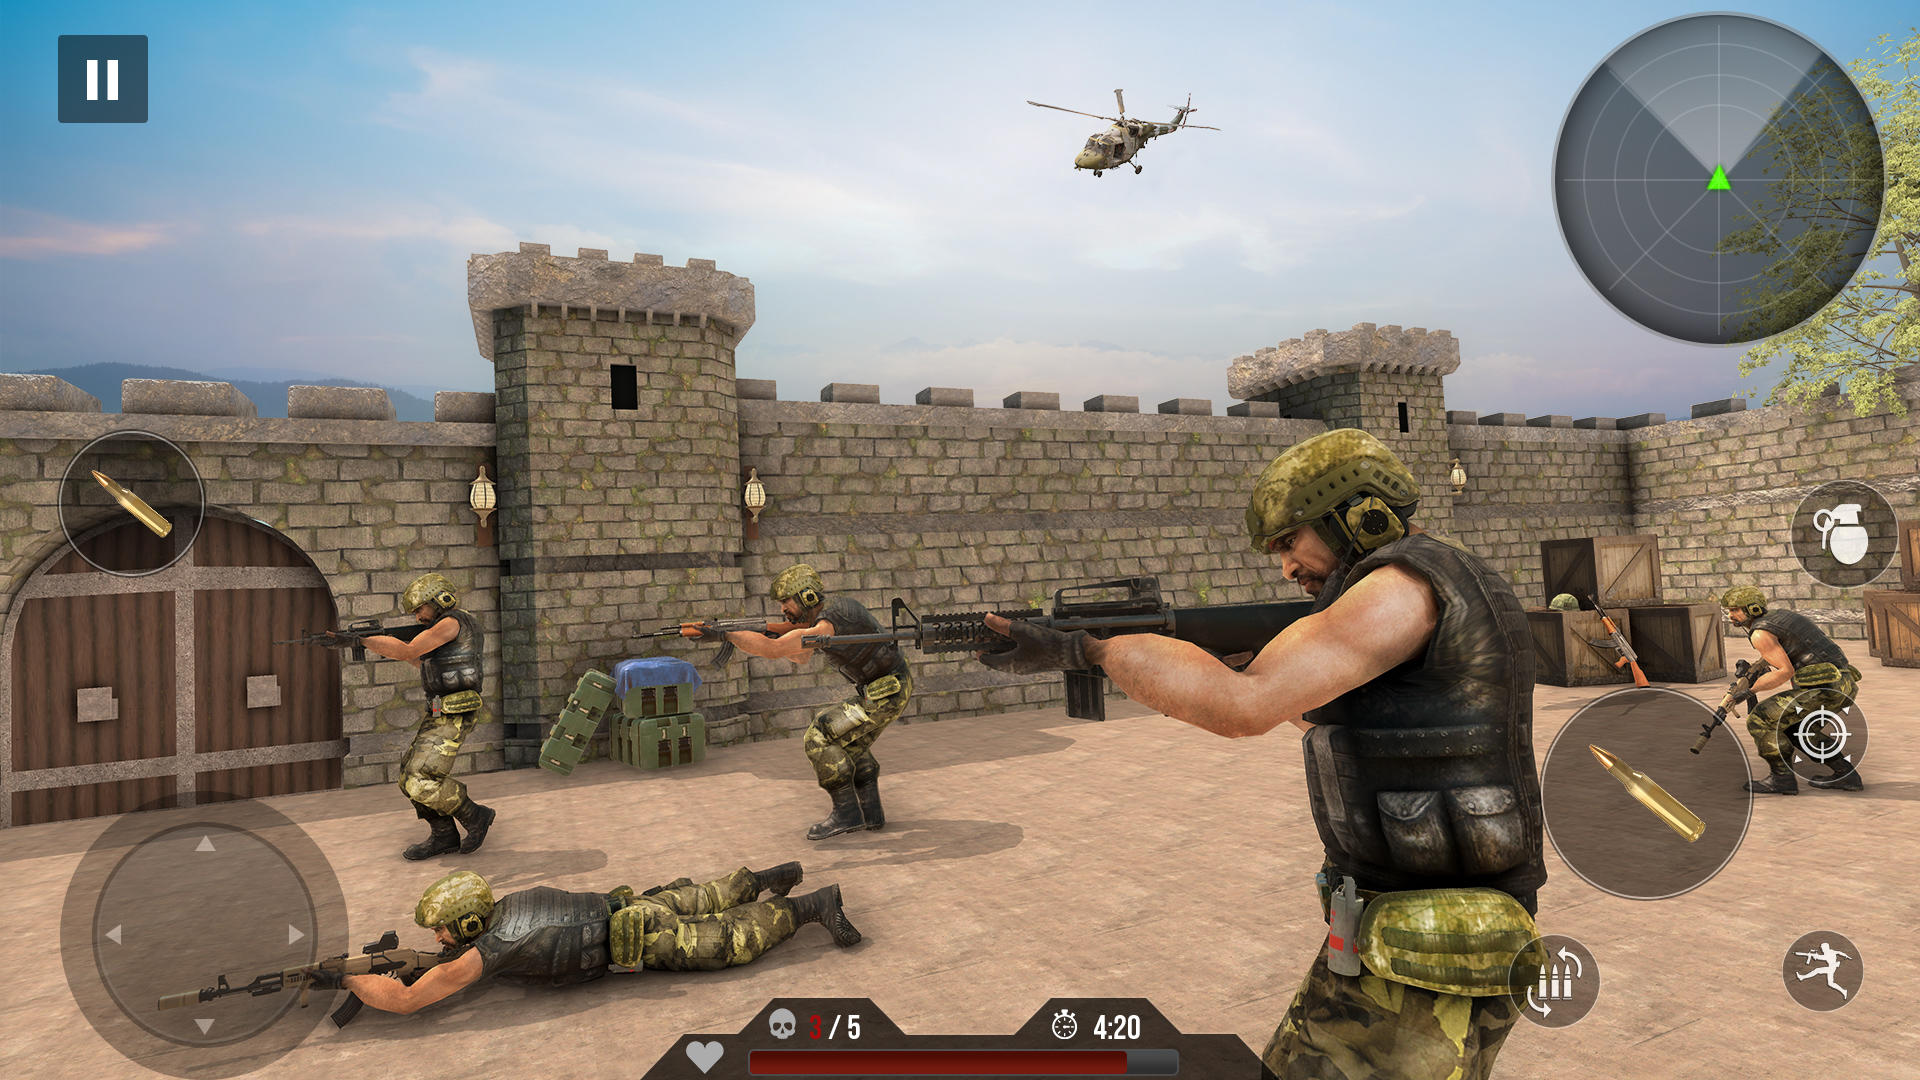 Screenshot 1 of Permainan Menembak FPS Encounter 2.0.29